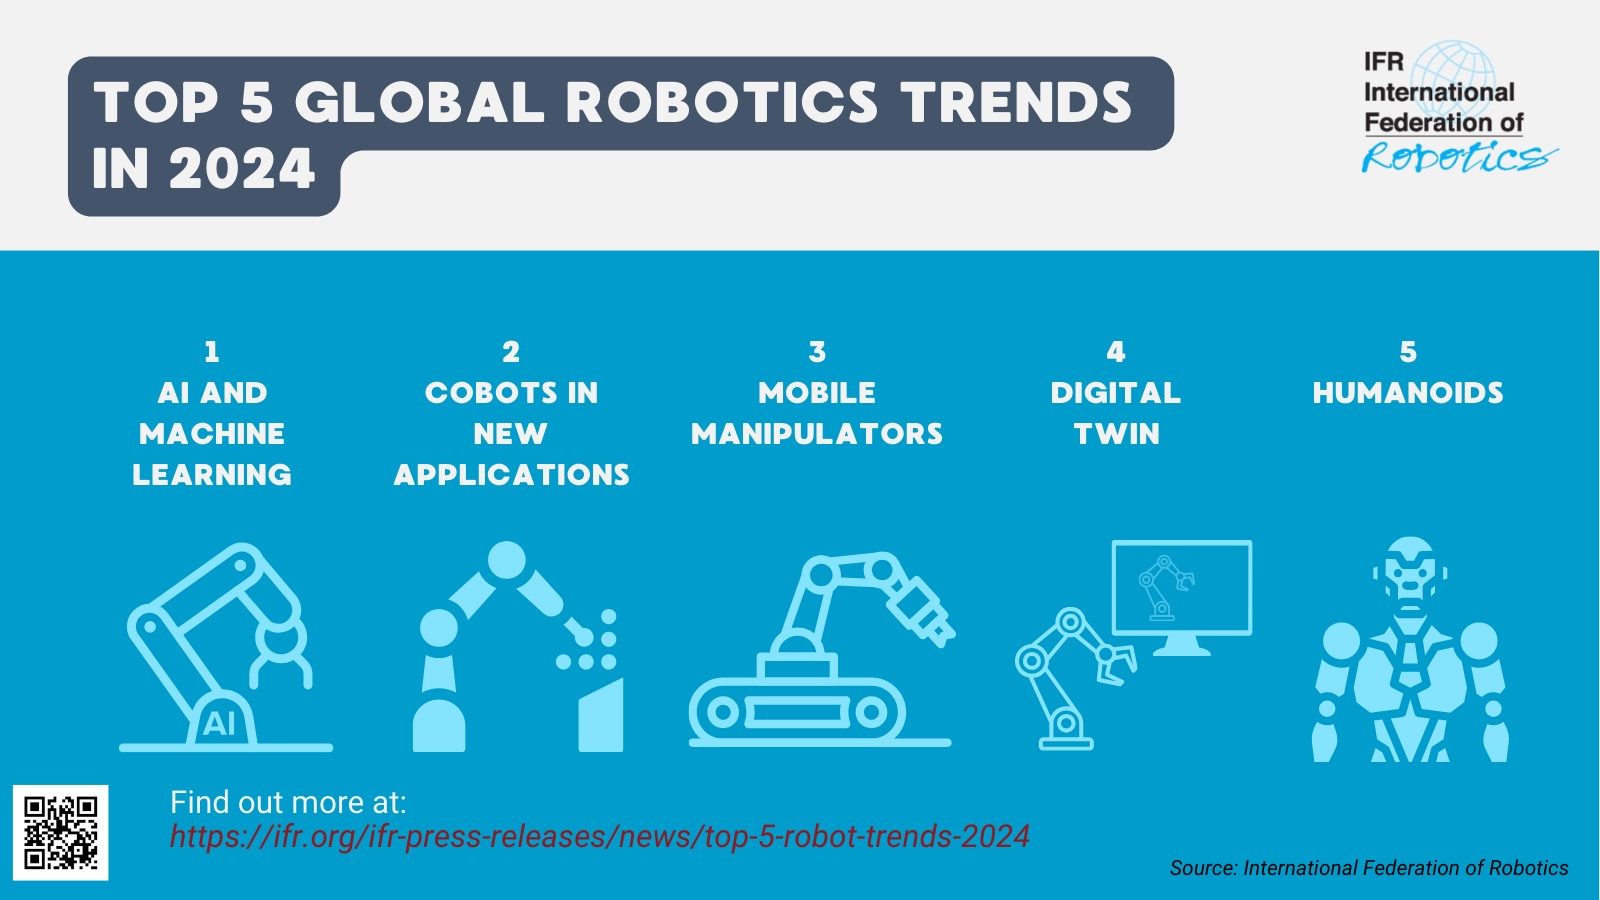 Top 5 Robot Trends in 2024